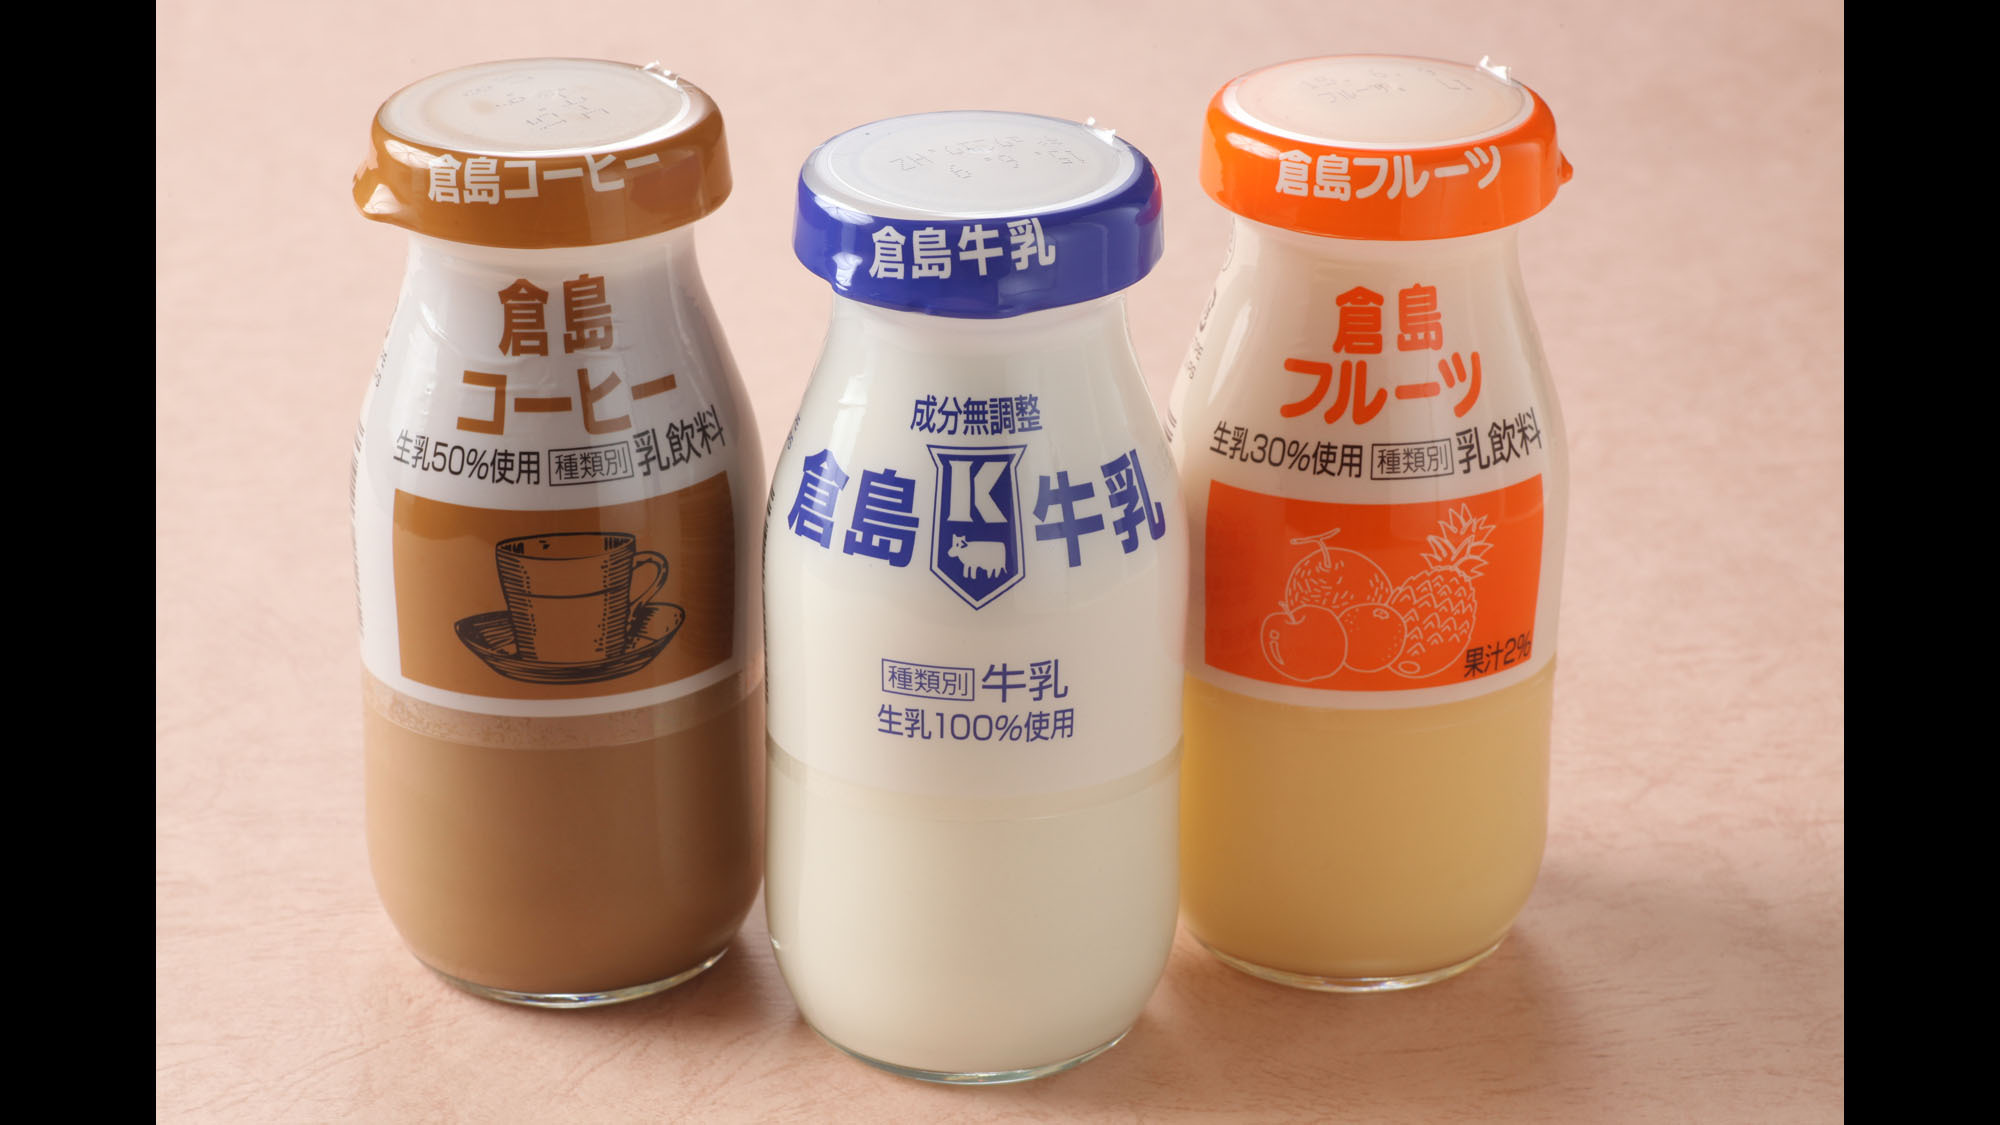 【倉島牛乳】岩内で製造されています。